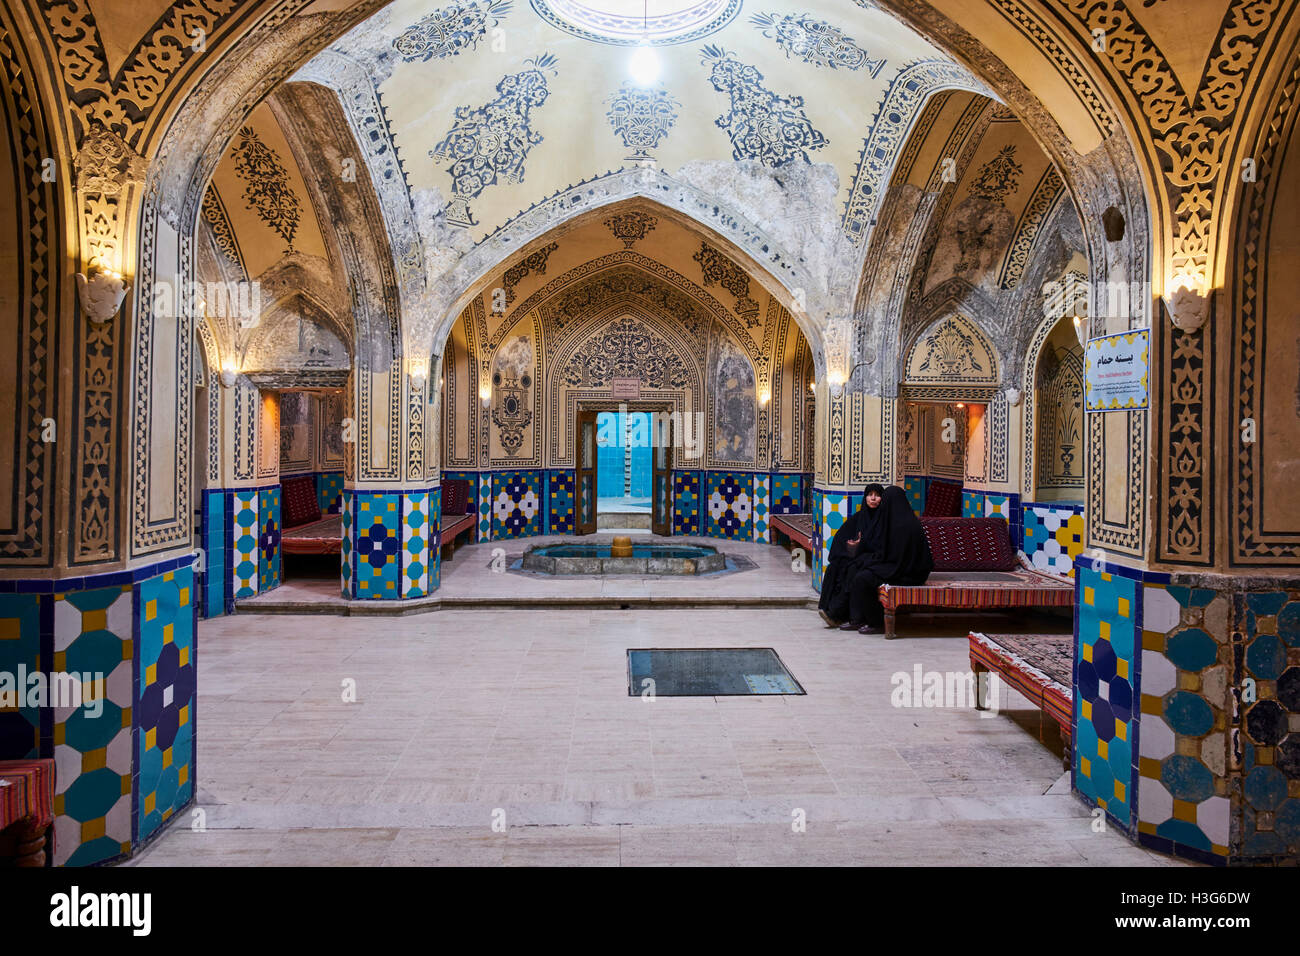 Iran, Ispahan province, Kashan ville, le hammam ou sauna du sultan Ahmad Mir Banque D'Images